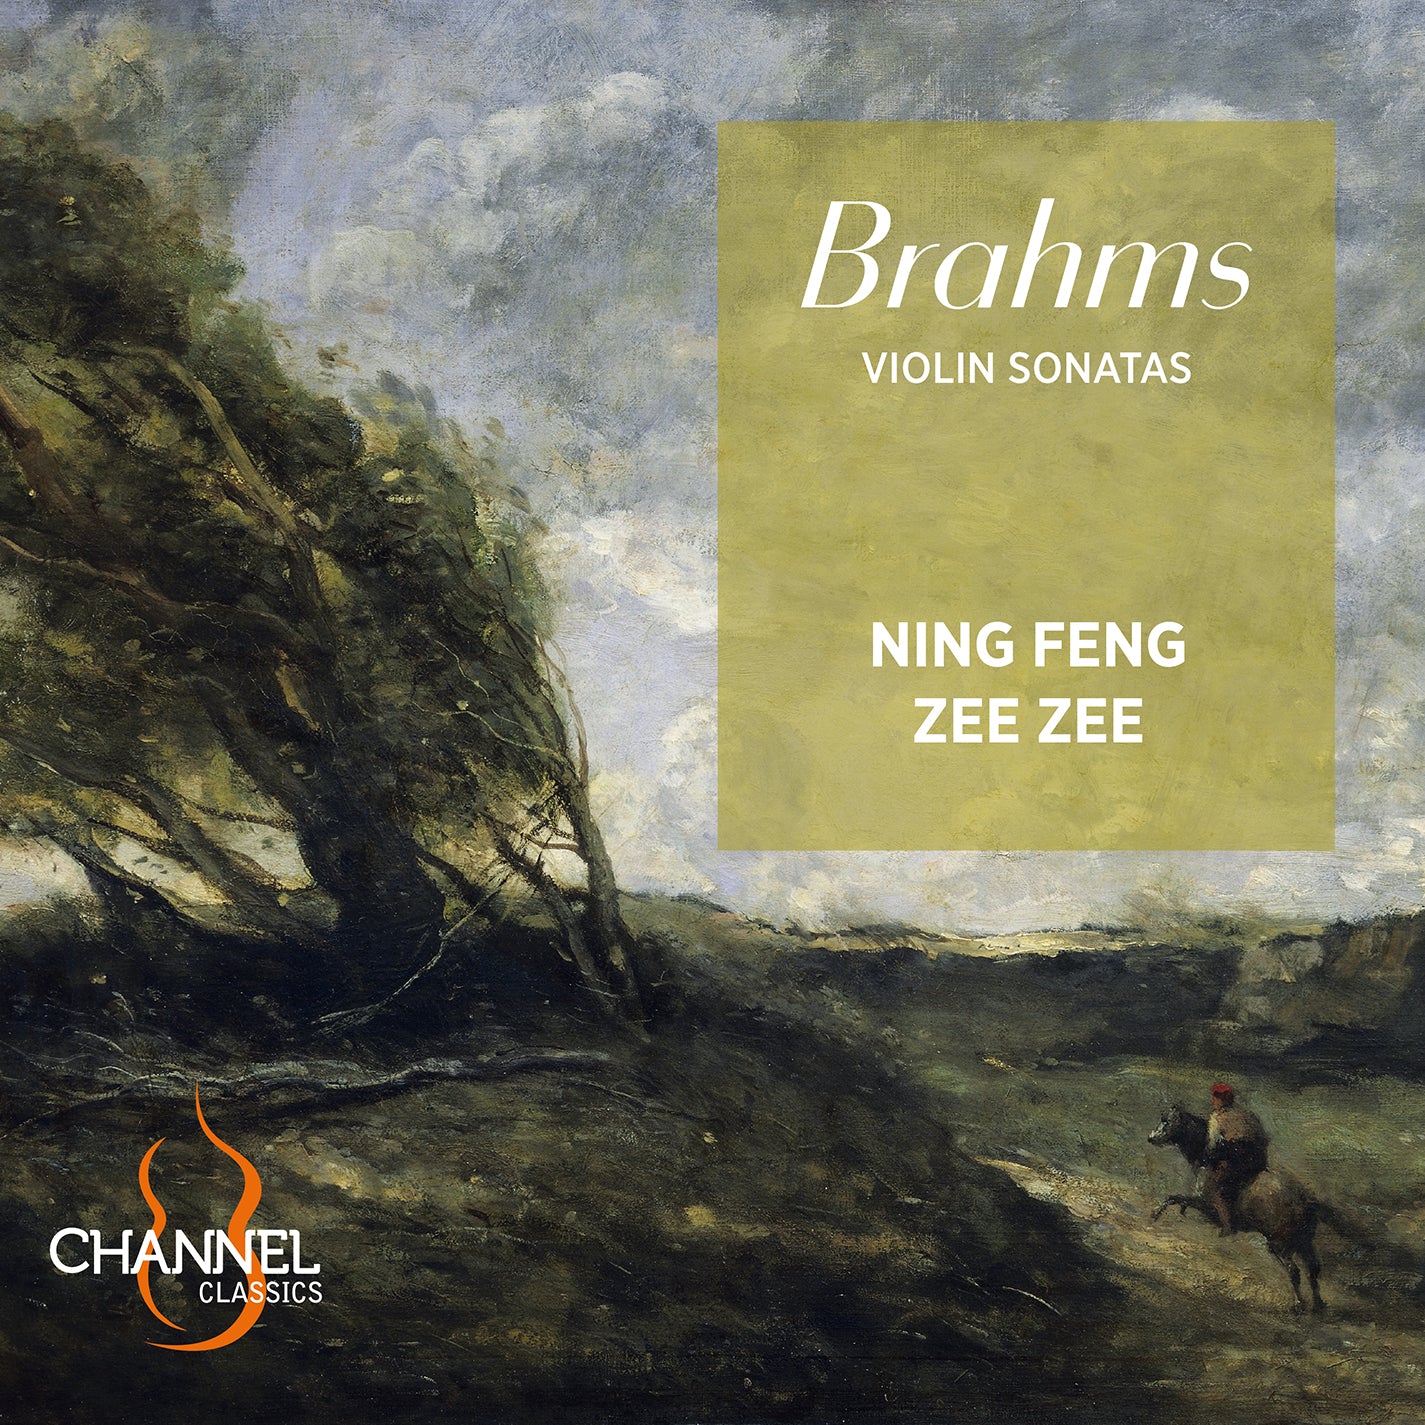 Brahms: Violin Sonatas / Ning Feng, Zee Zee